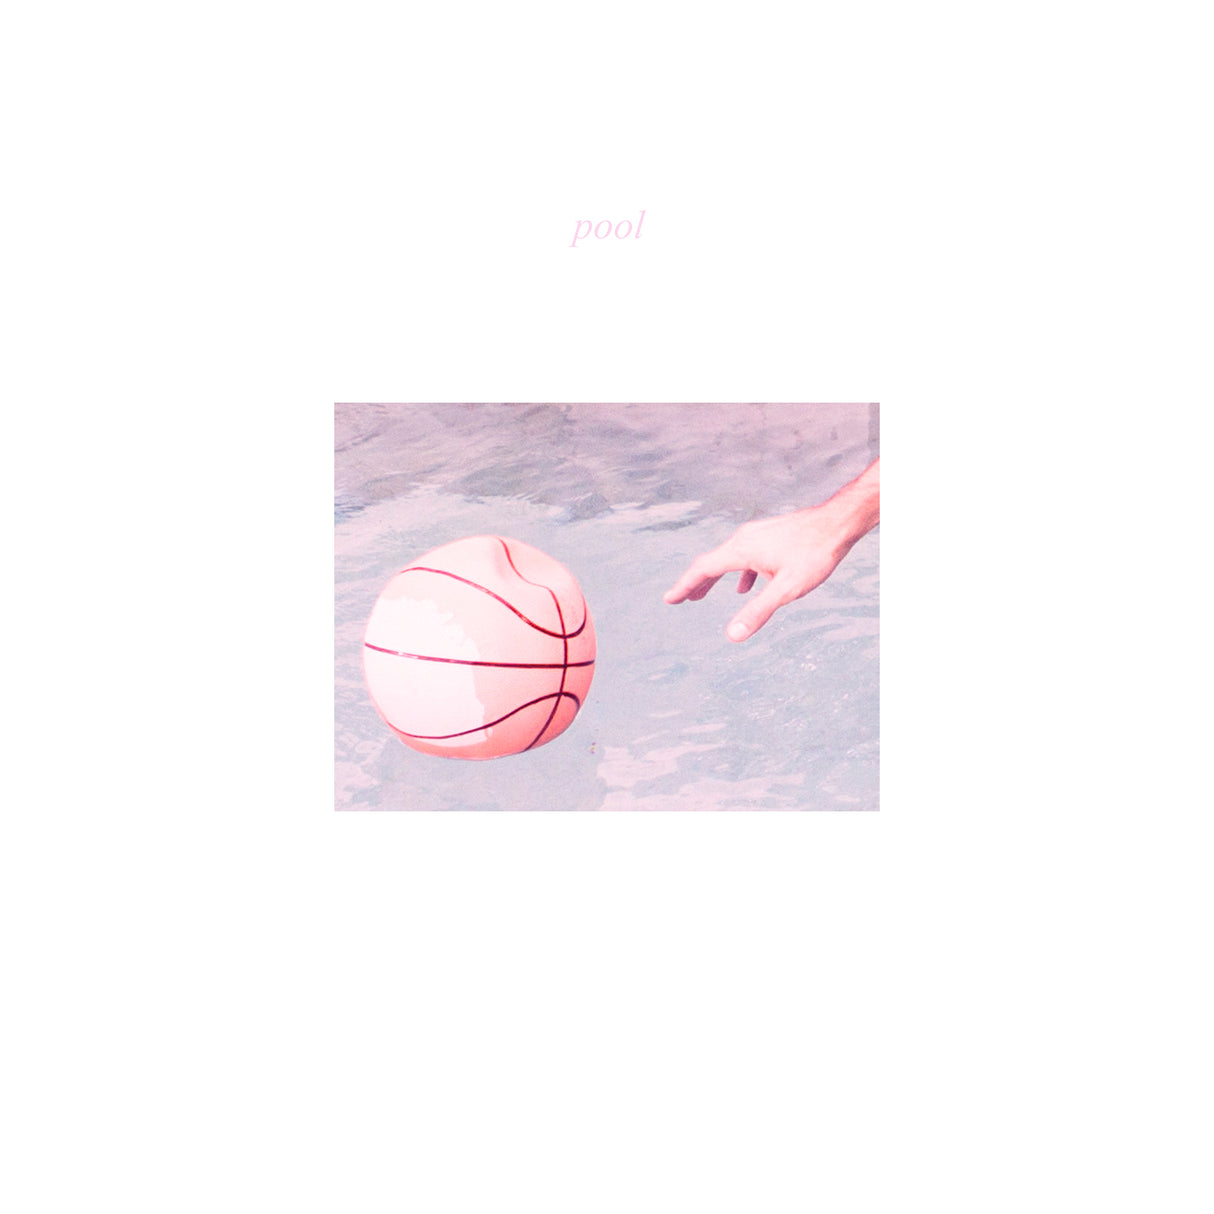 Pool [CD]